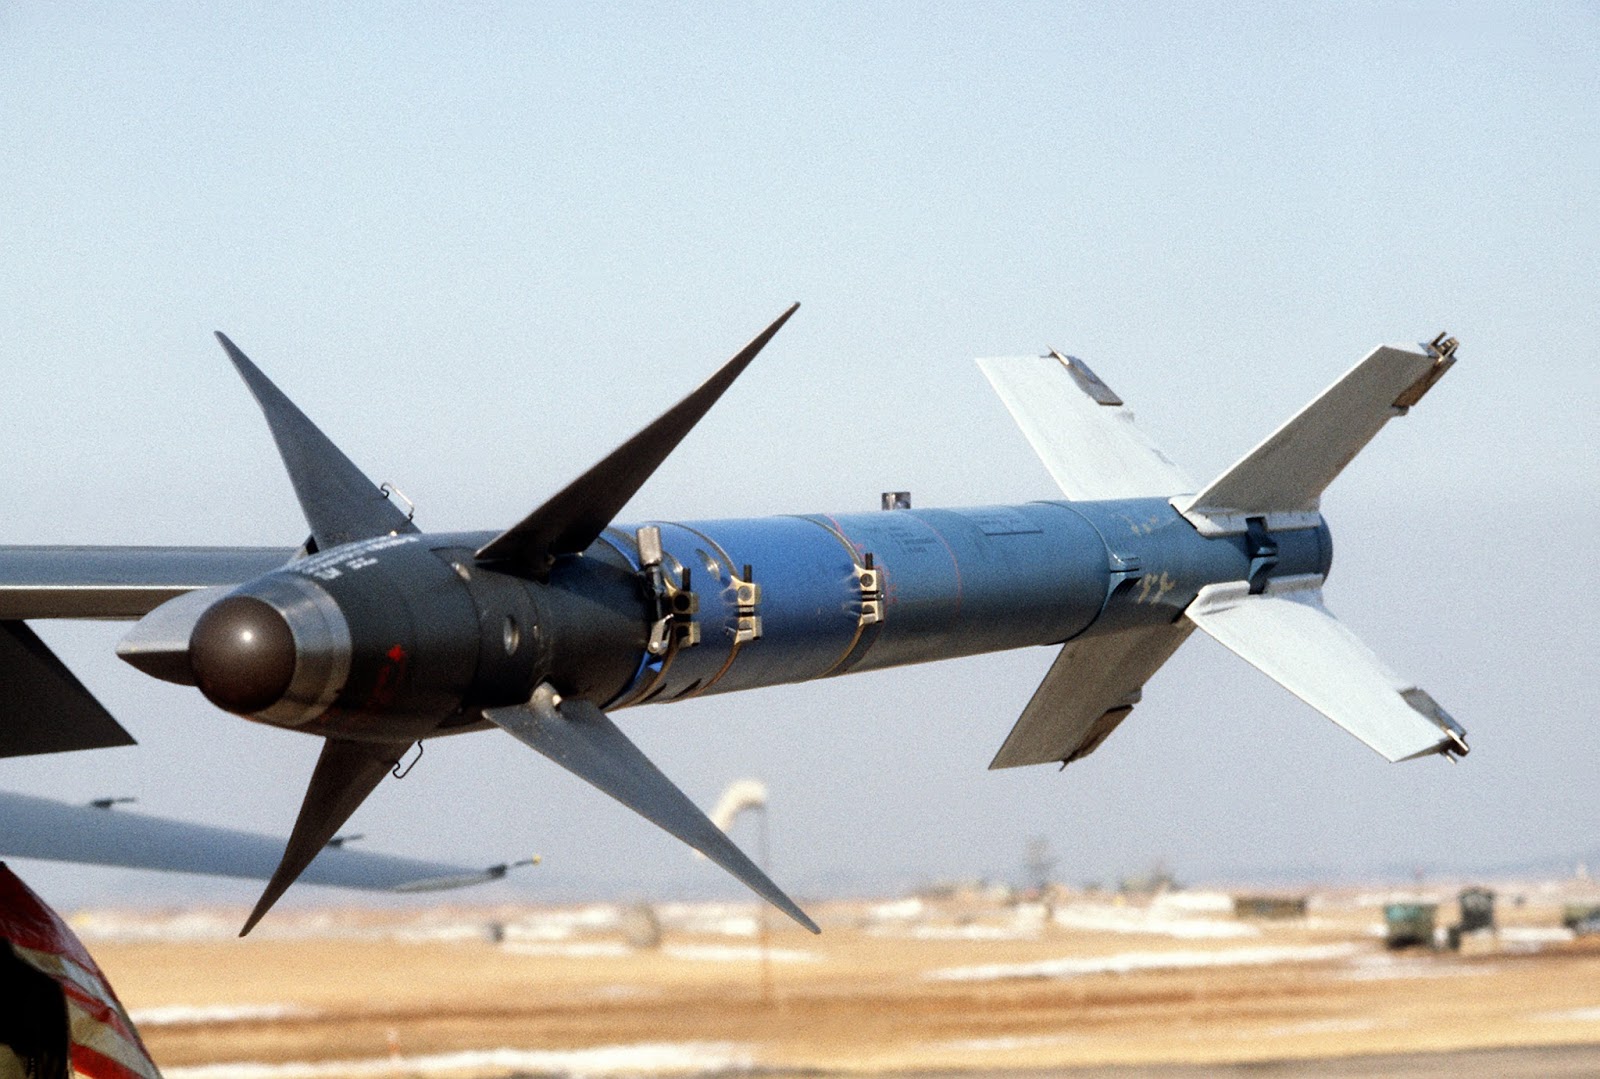 AIM-9M Sidewinder short-range air-to-air missile